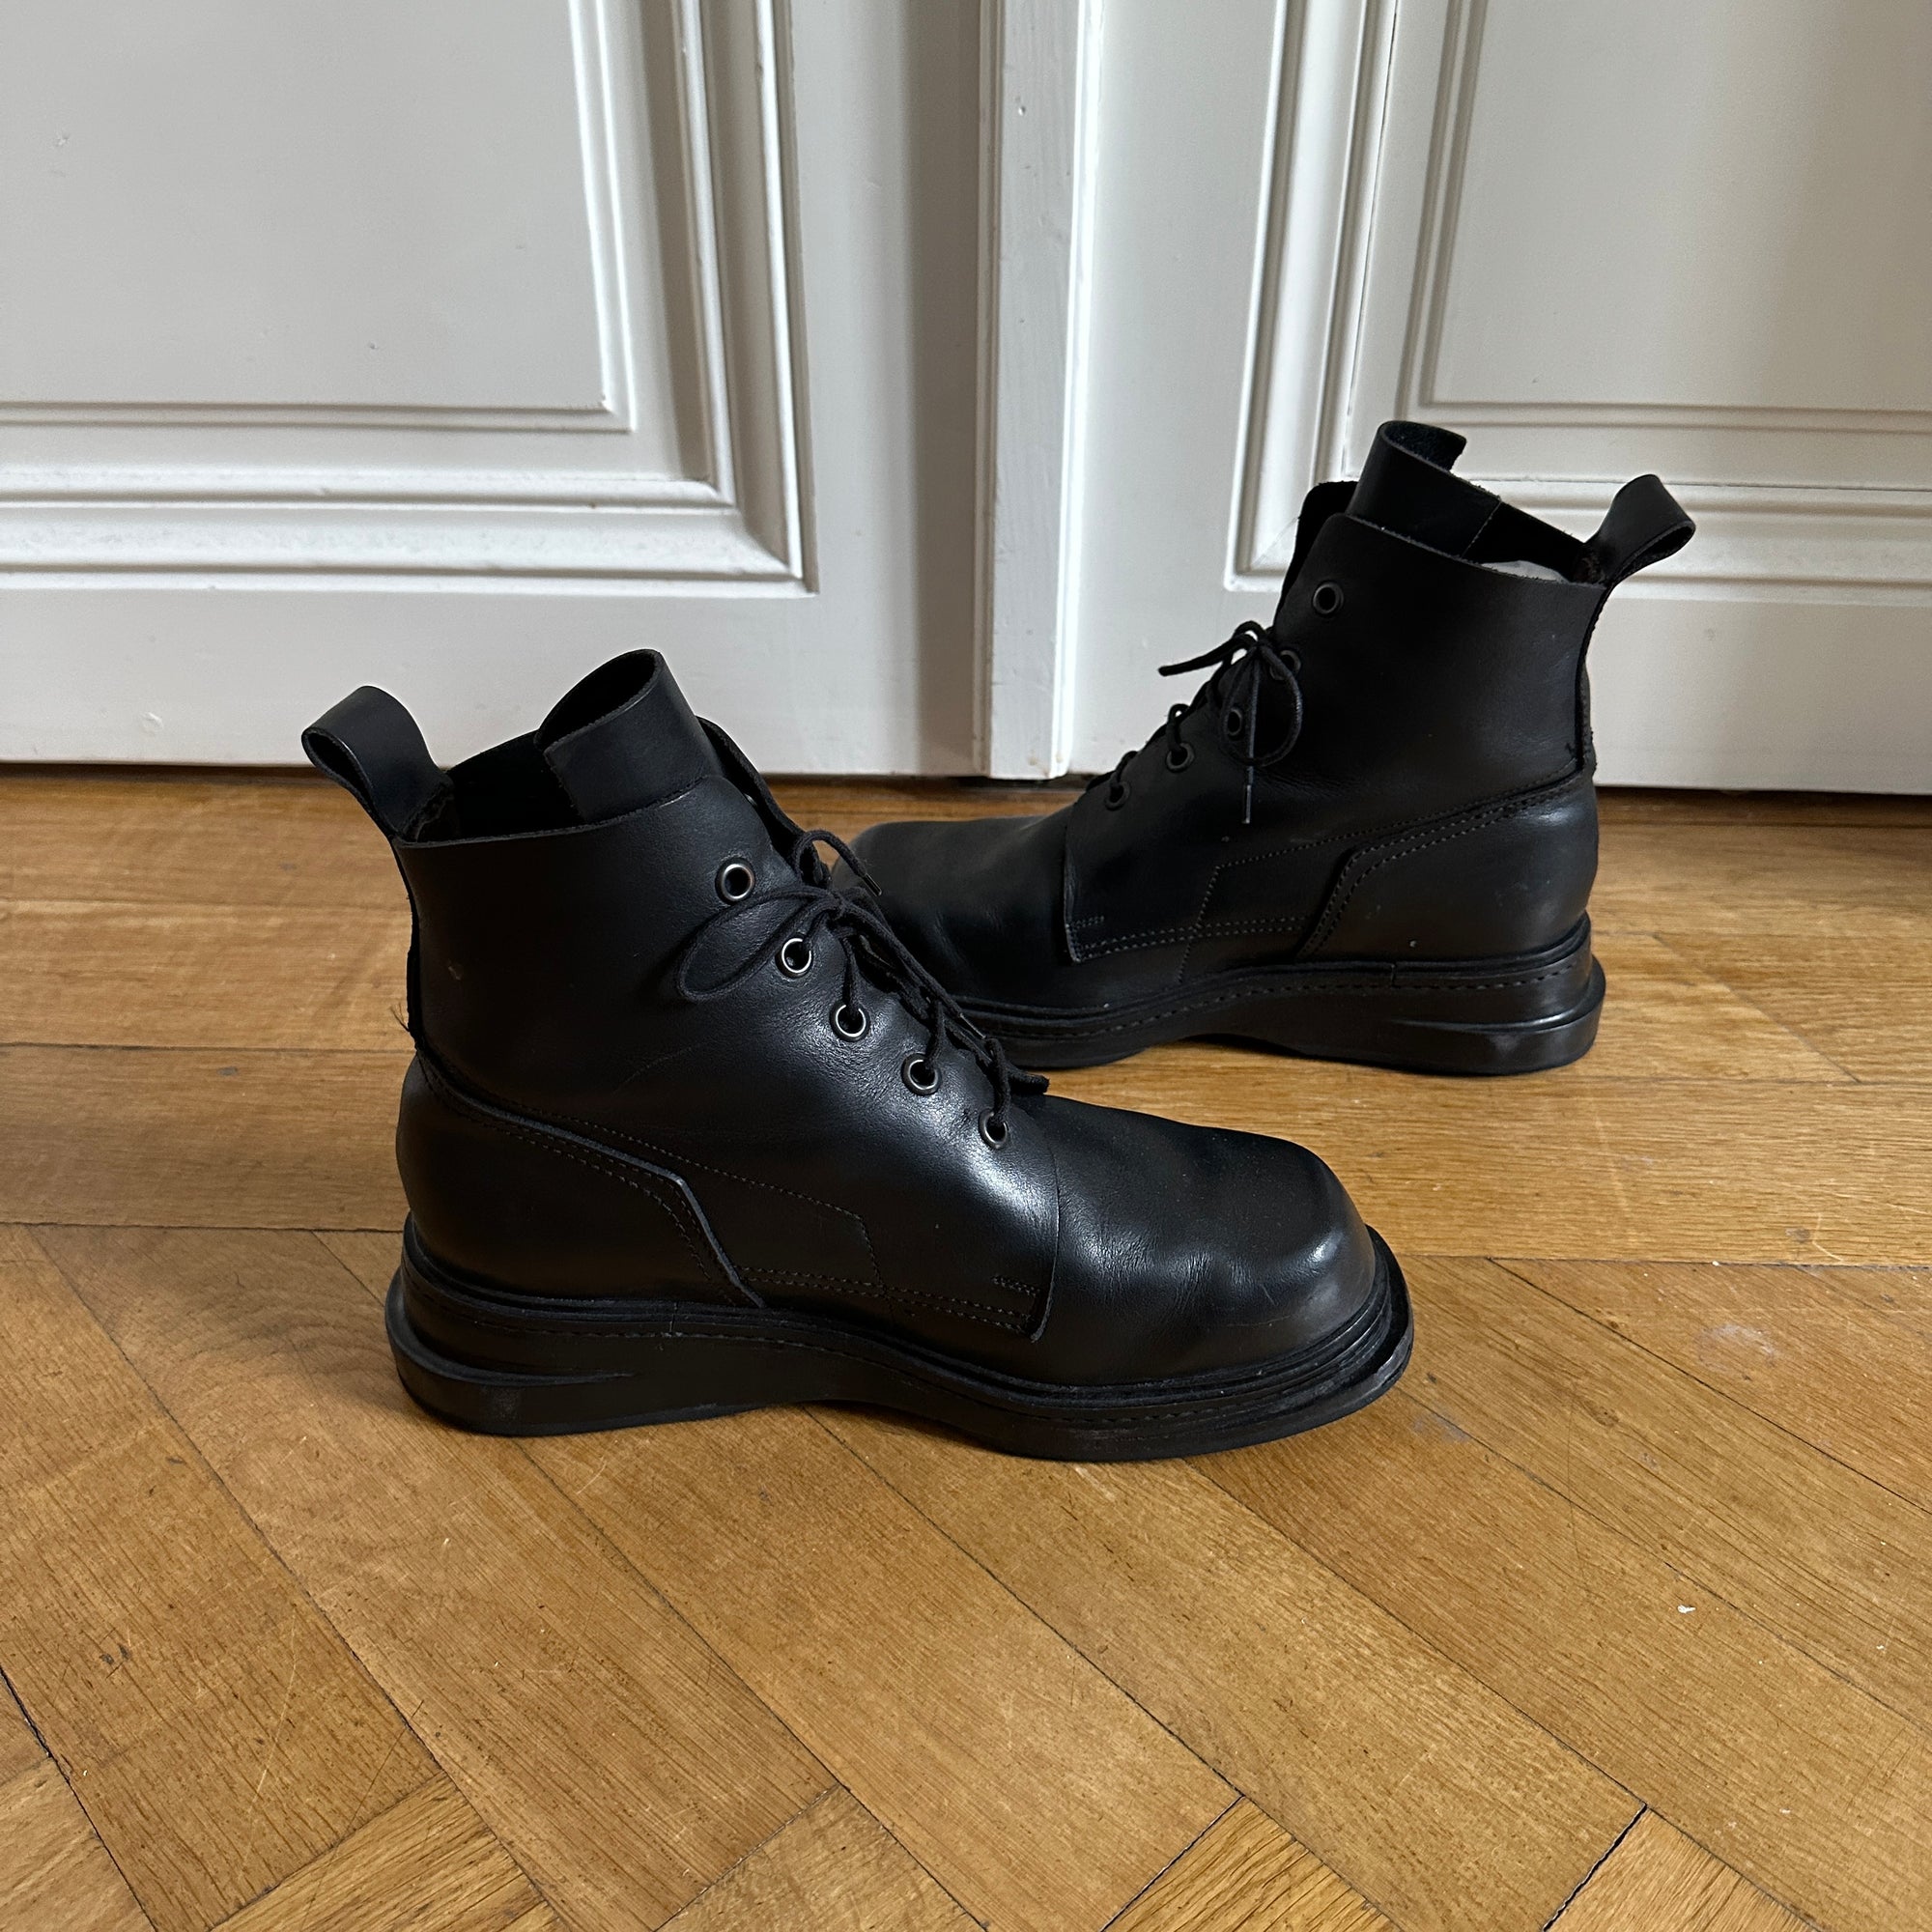 Dirk Bikkembergs 90s Black Leather Heel Boots